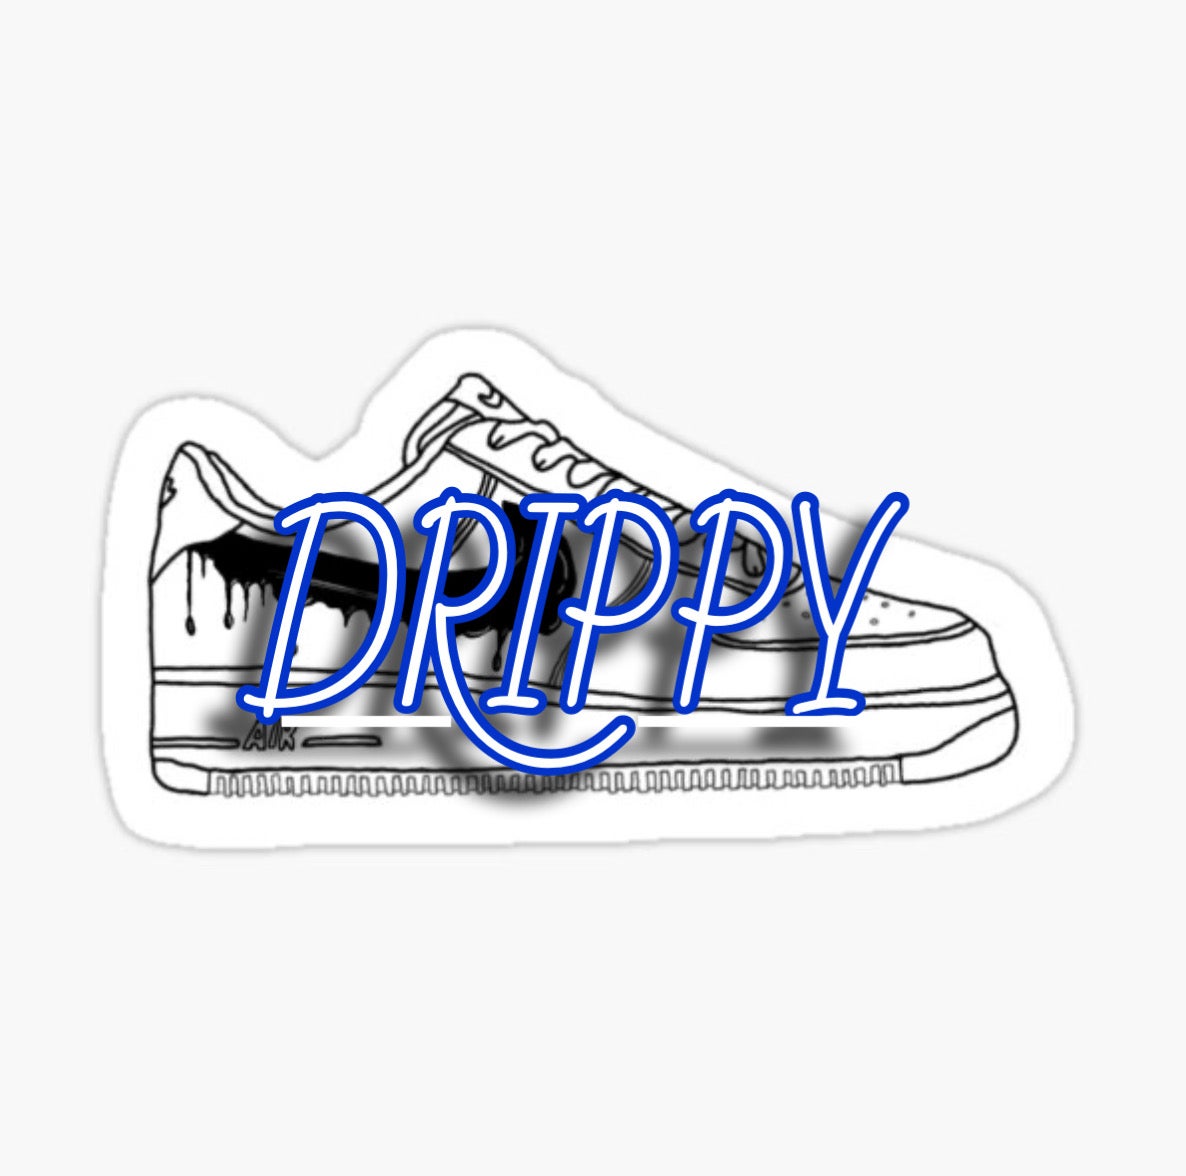 Drippy Shop